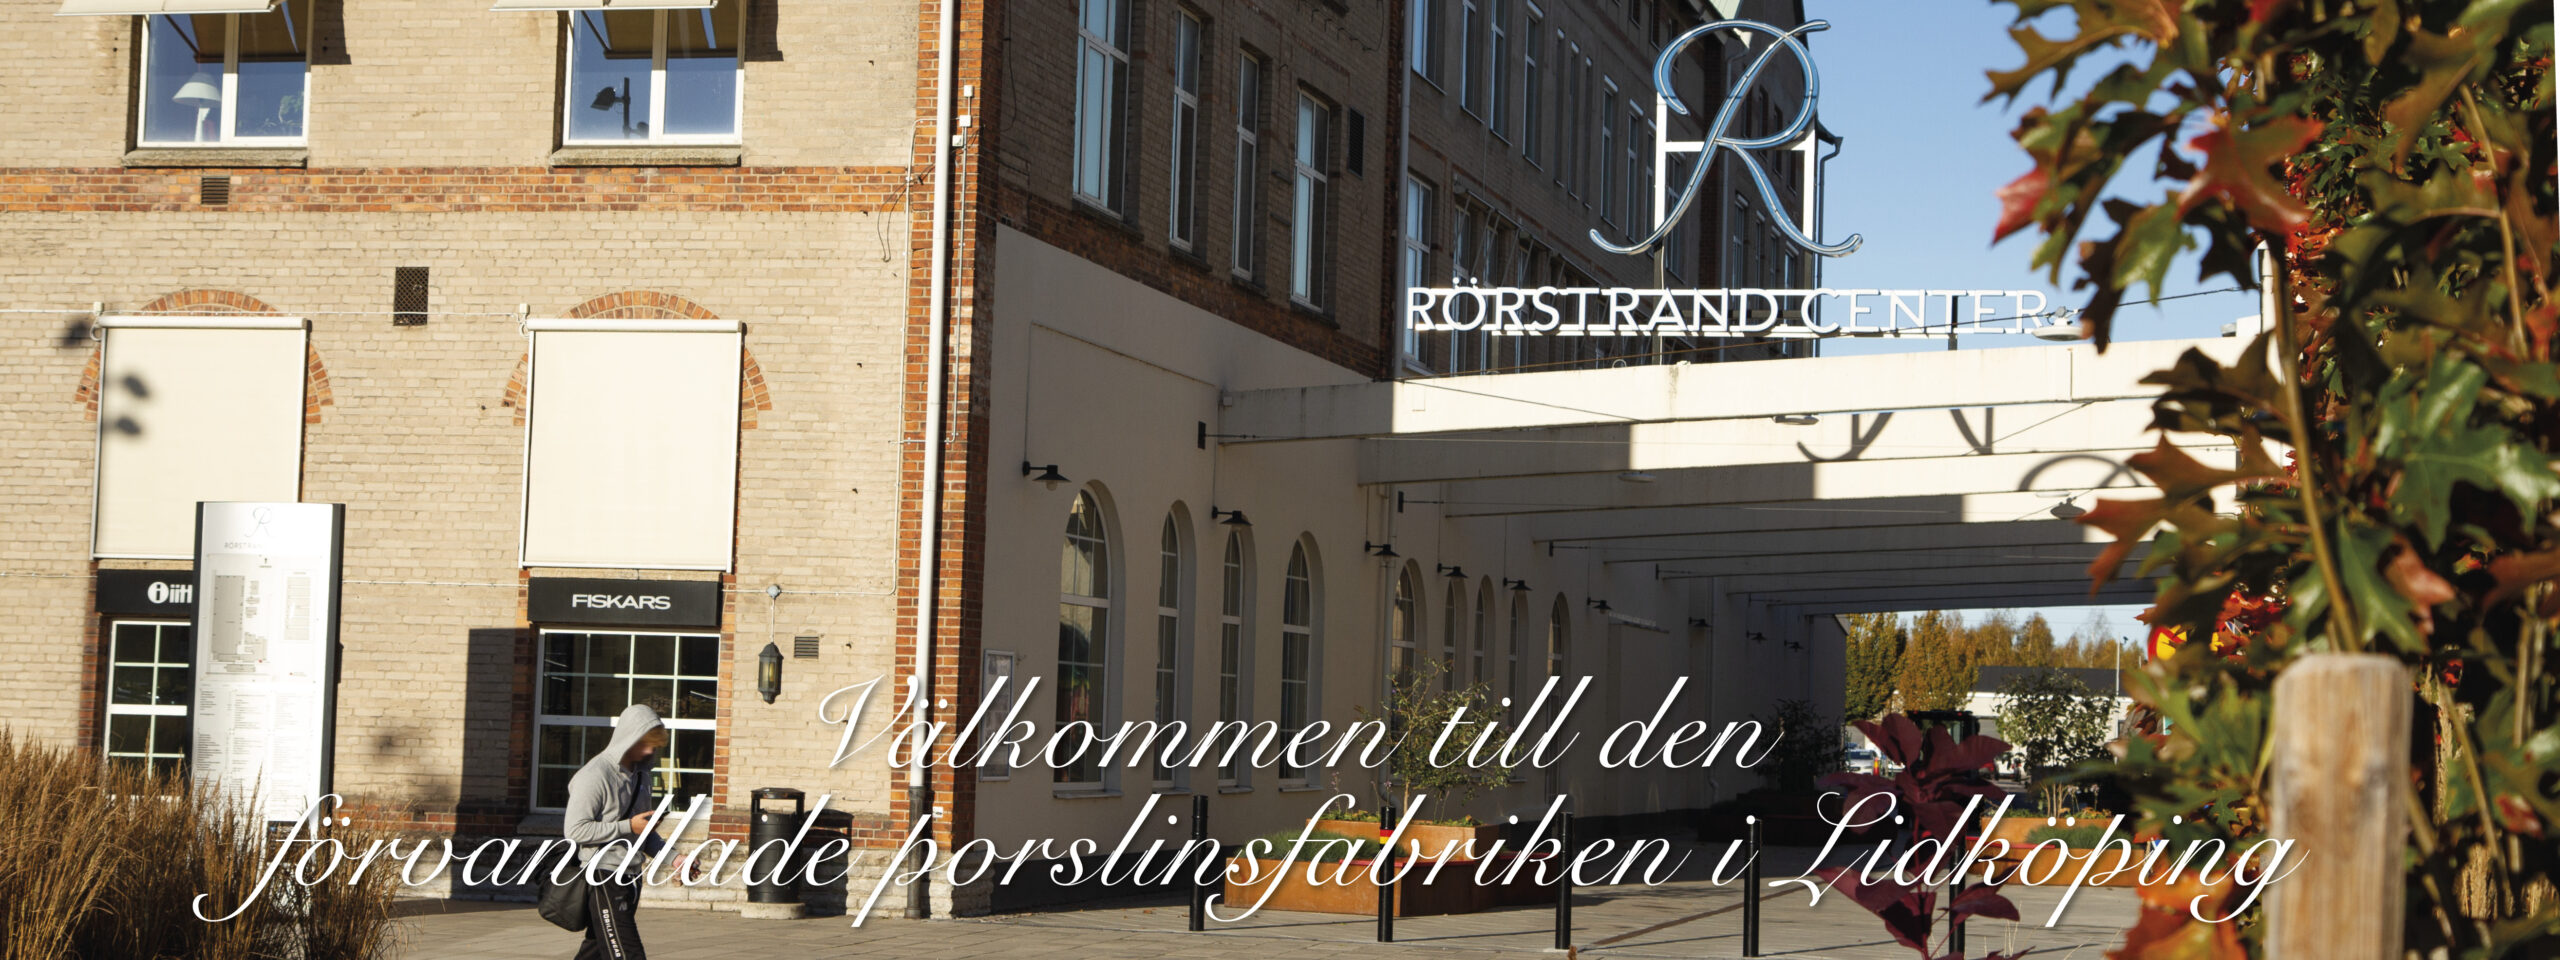 Välkommen till Rörstrand Center, den förvandlade porslinsfabriken i Lidköping